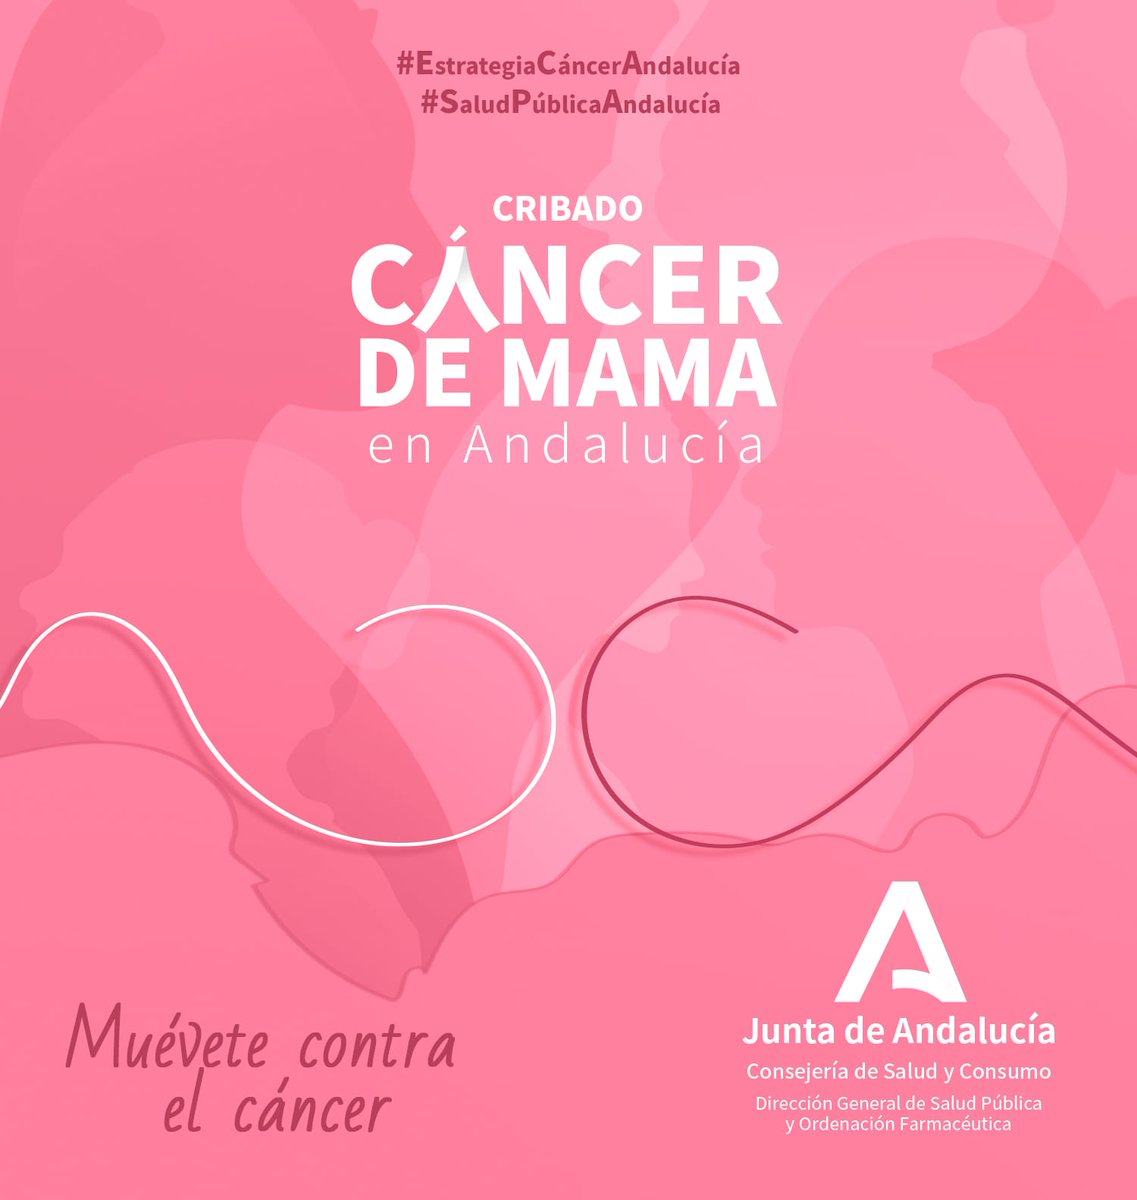 Todos tenemos cerca a alguien que lucha contra el cáncer. Son un ejemplo inspirador de superación y coraje. #Andalucía seguirá ampliando la edad de cribado del cáncer de mama hasta alcanzar a las mujeres de entre 40 y 75 años. #ElRosaEsMásQueUnColor #DíaMundialDelCáncerdeMama